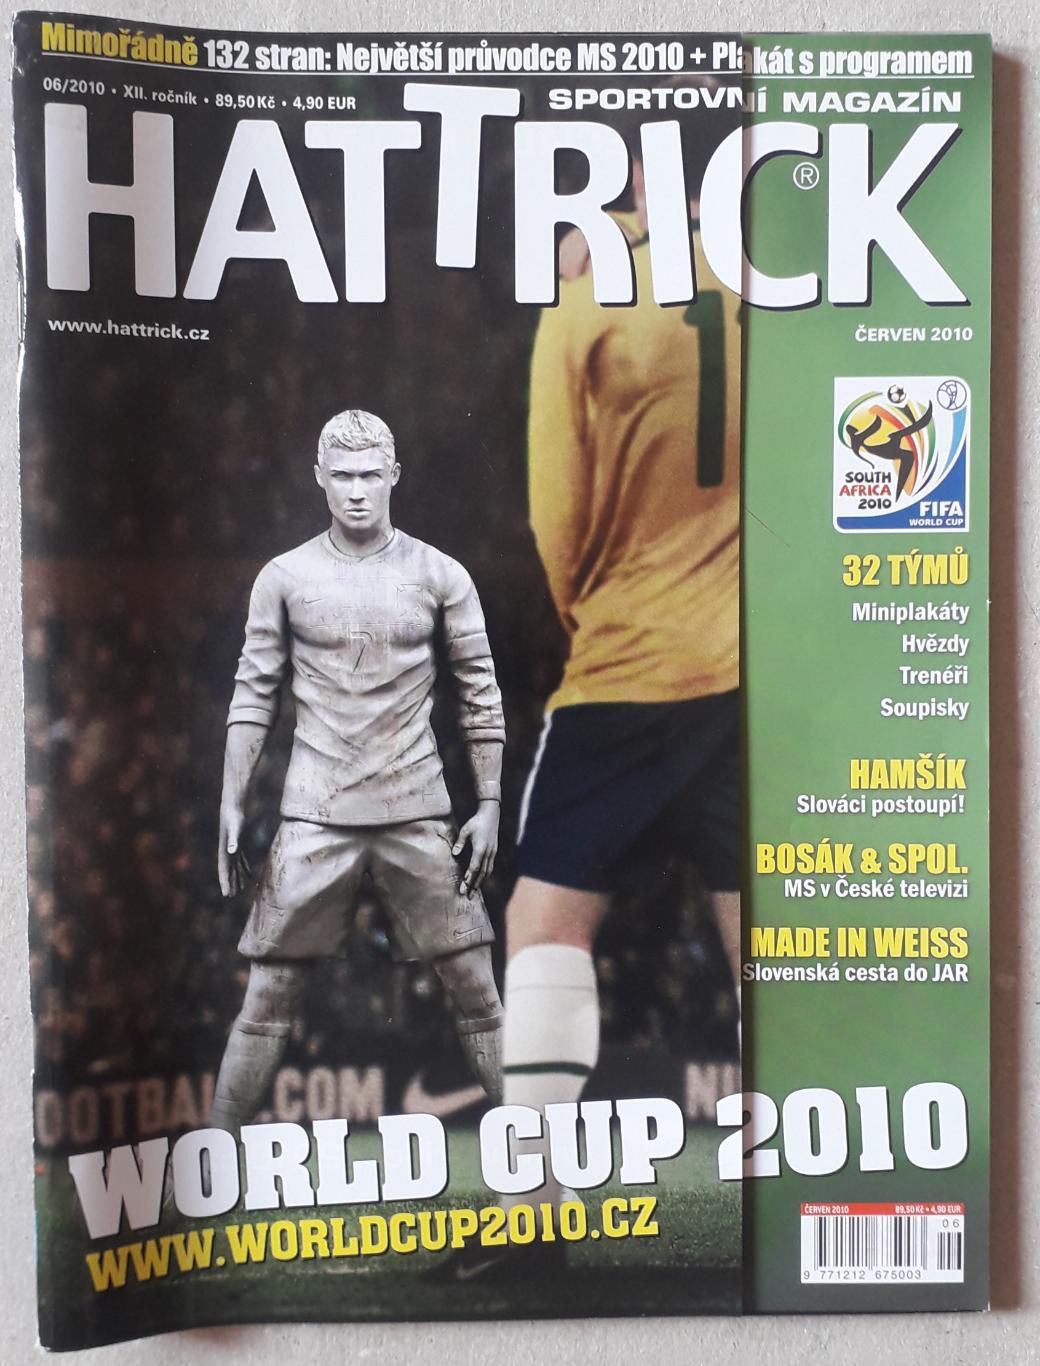 Hattrick WC 2010